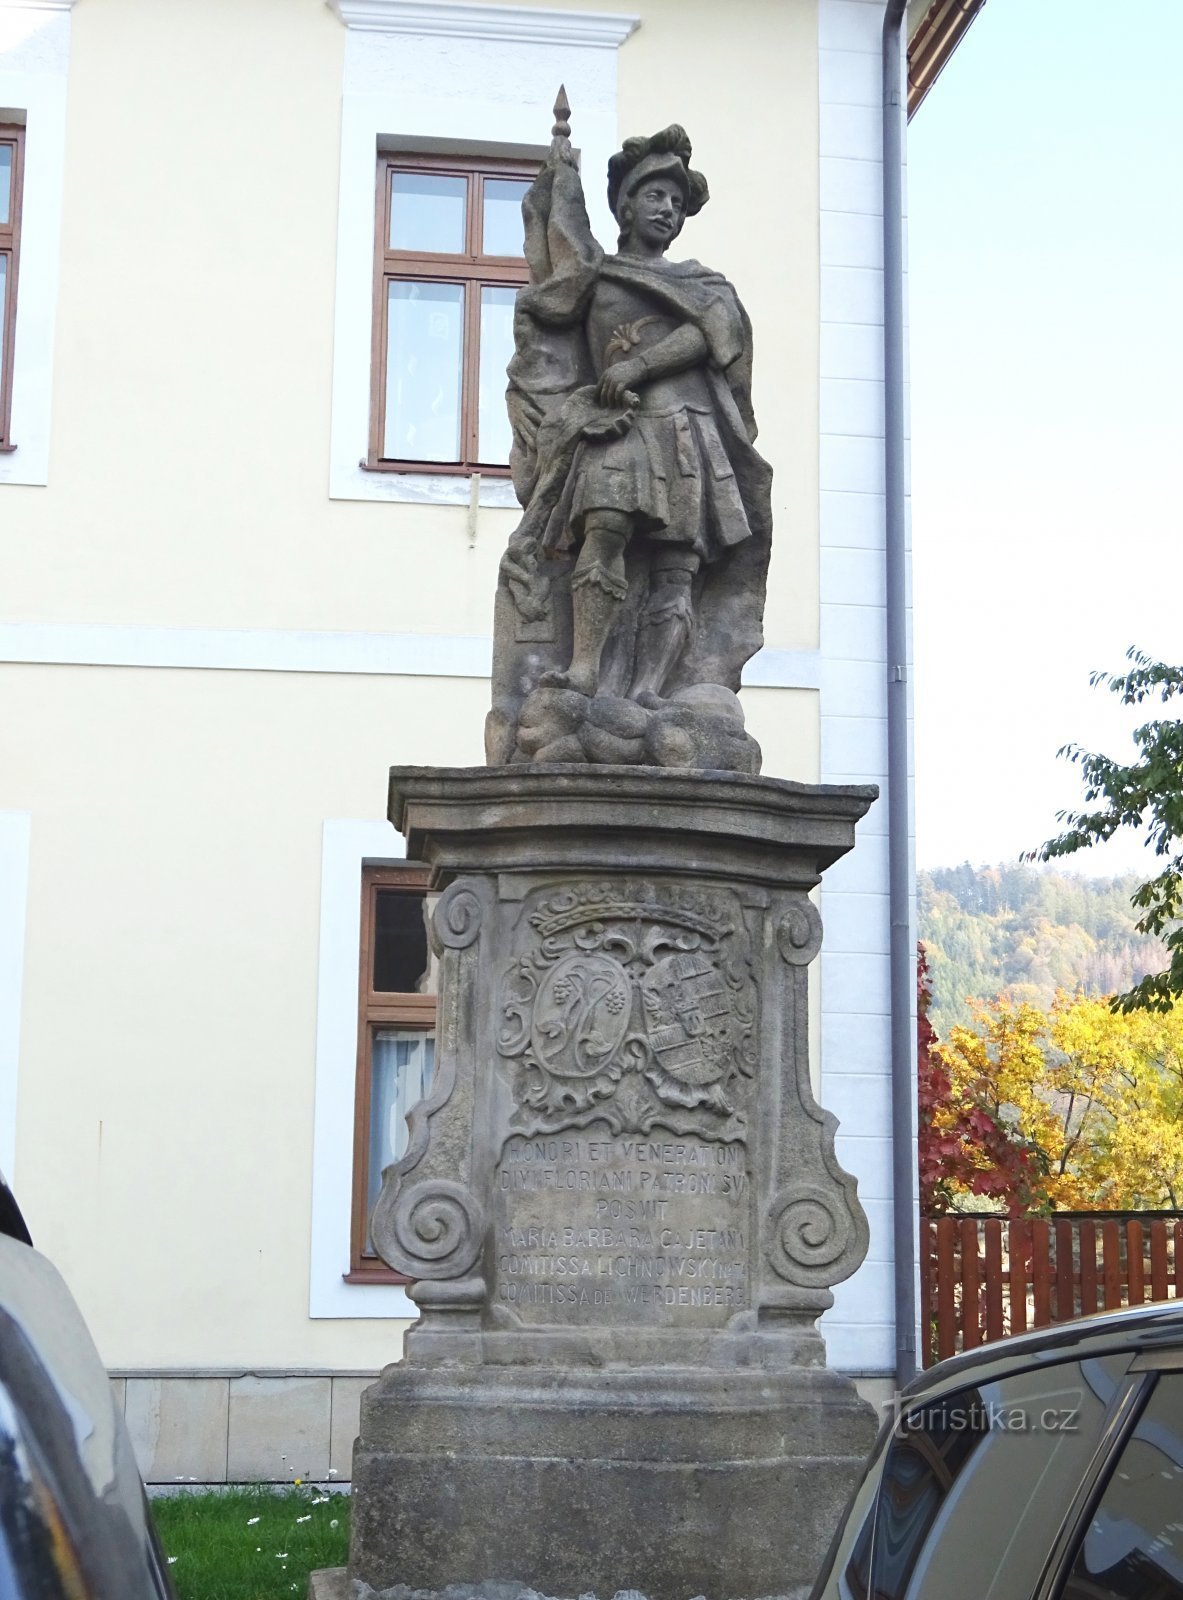 Одри - будівля настоятеля та статуя св. Флоріана